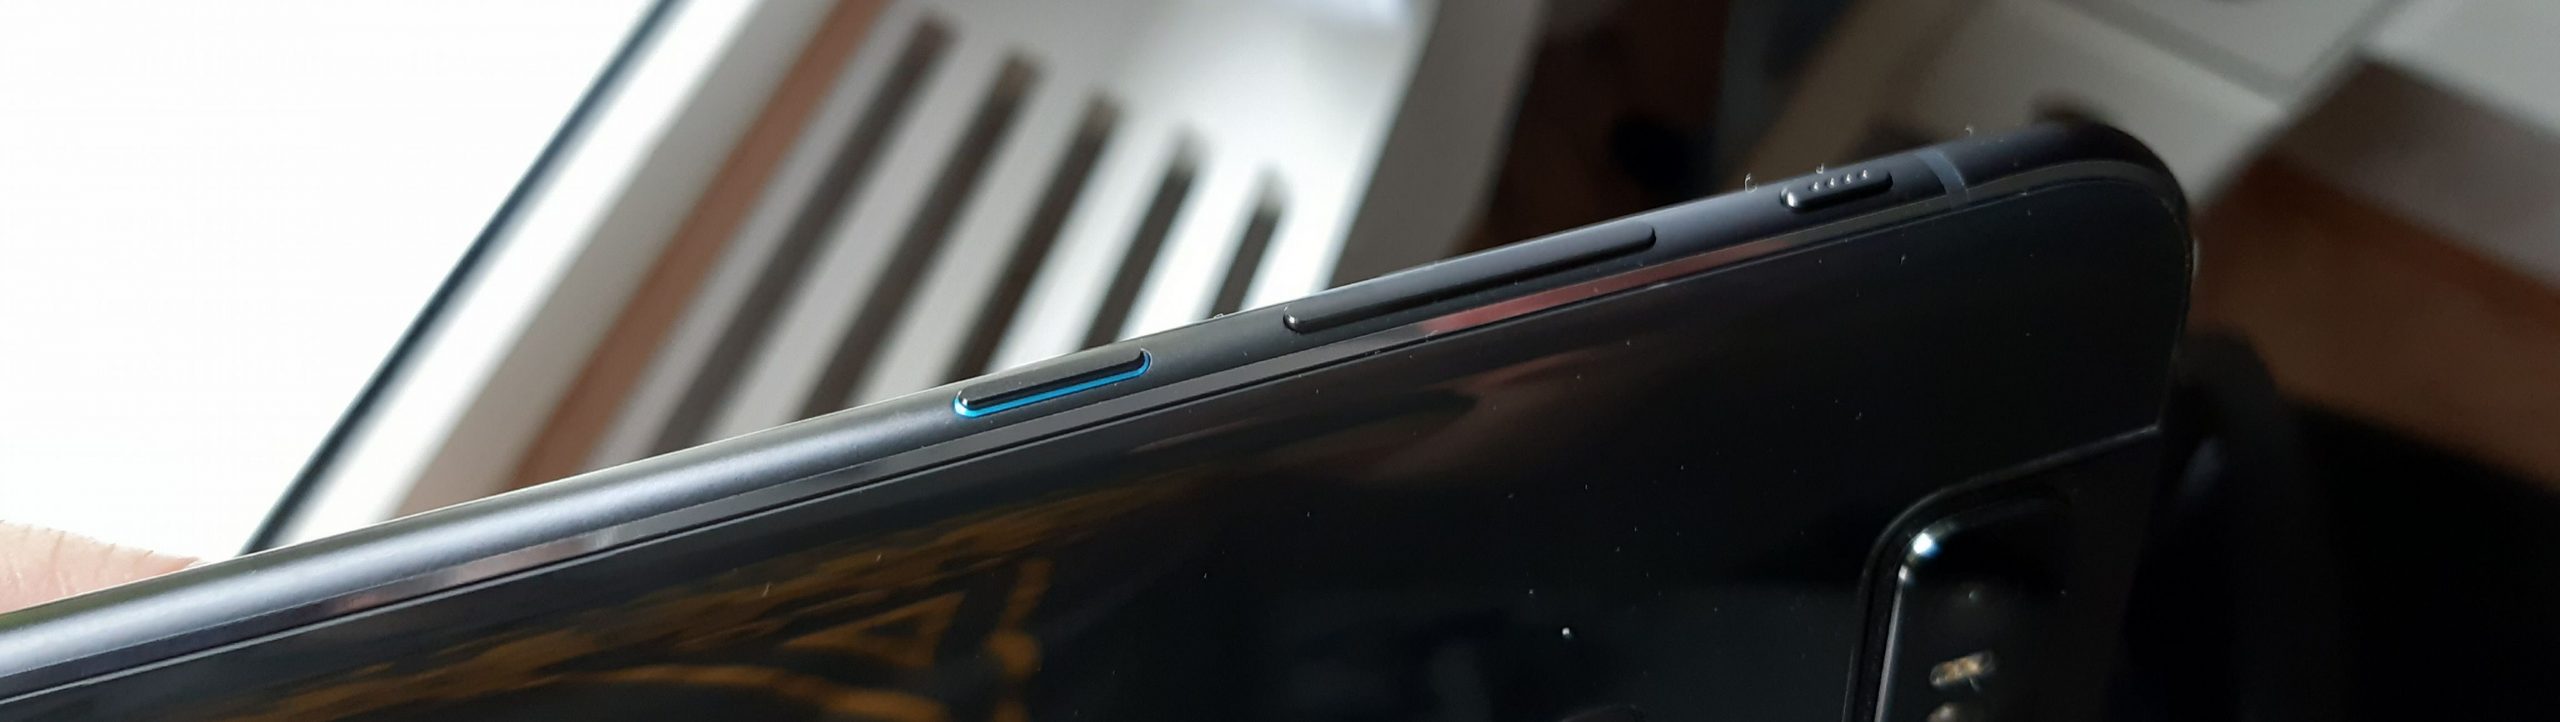 ZenFone 6:n painikkeet ovat puhelimen oikealla kyljellä. Ylimpänä pienikokoinen Smart-näppäin.